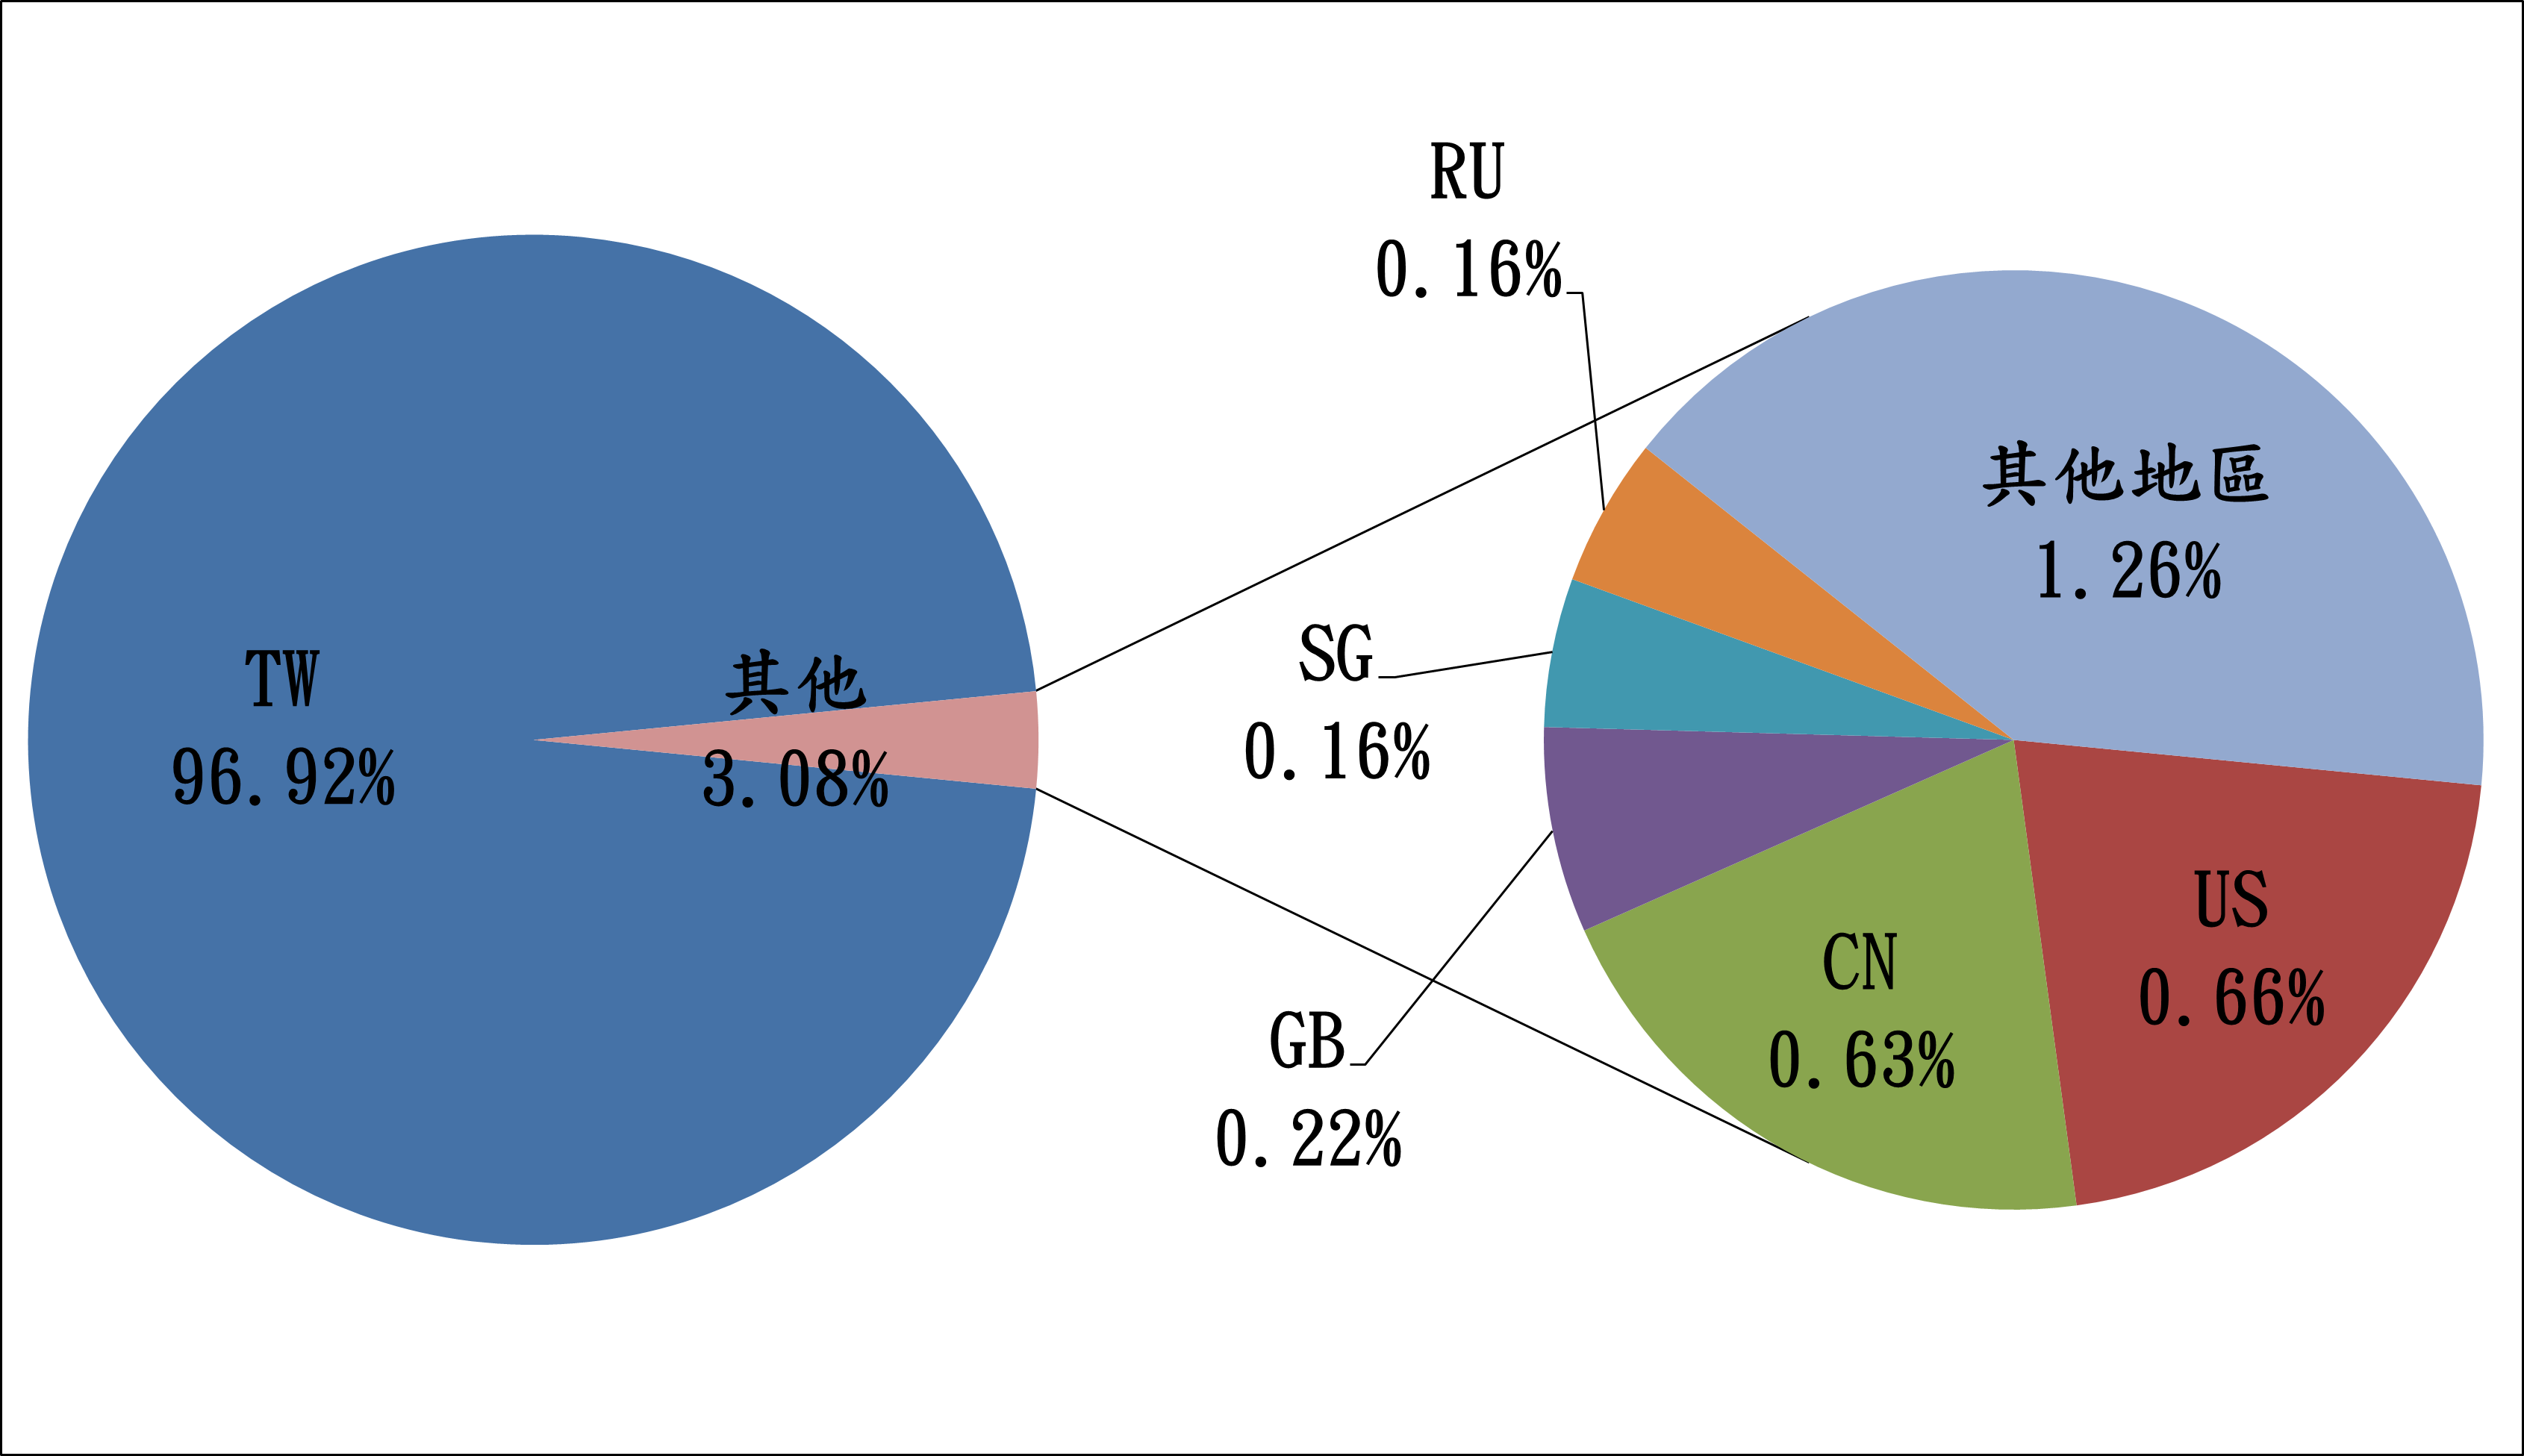 TW96.92% 其他3.08% RU0.16% SG0.16% GB0.22% CN0.63% US0.66% 其他地區1.26%